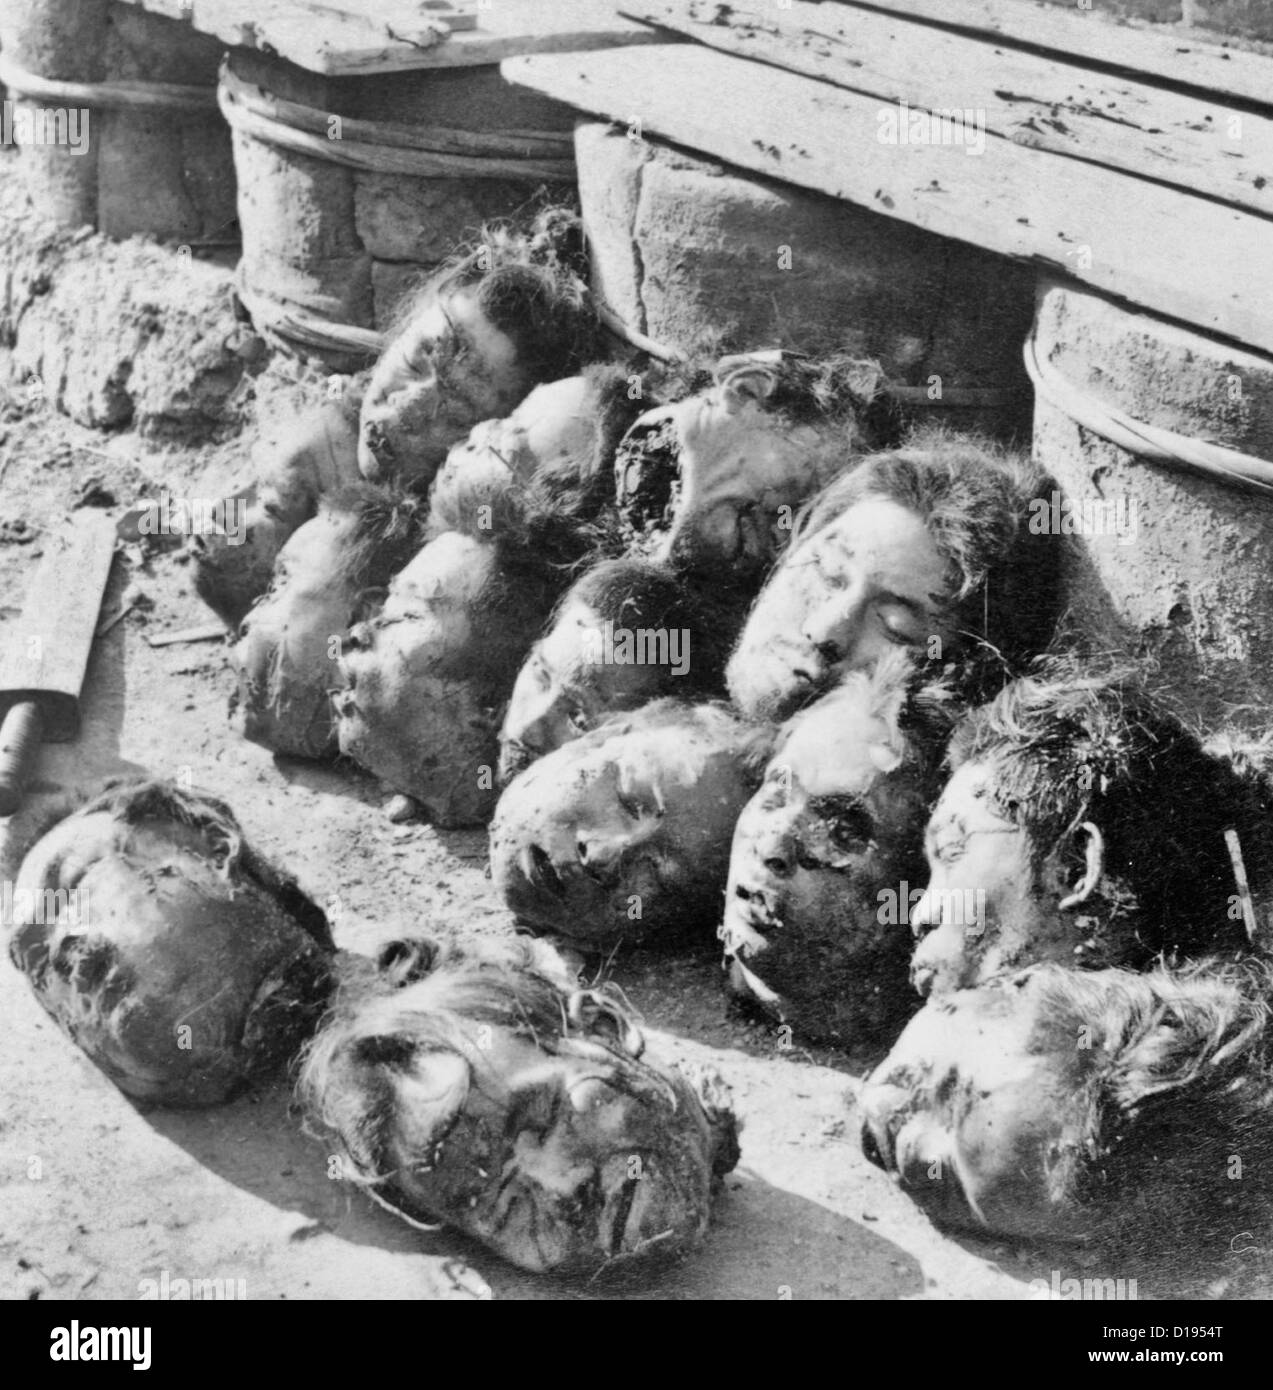 Nach der Hinrichtung, Kanton Gefängnis, China - abgeschlagenen Köpfe auf dem Boden verstreut. Nach dem Boxeraufstand, 1901 Stockfoto